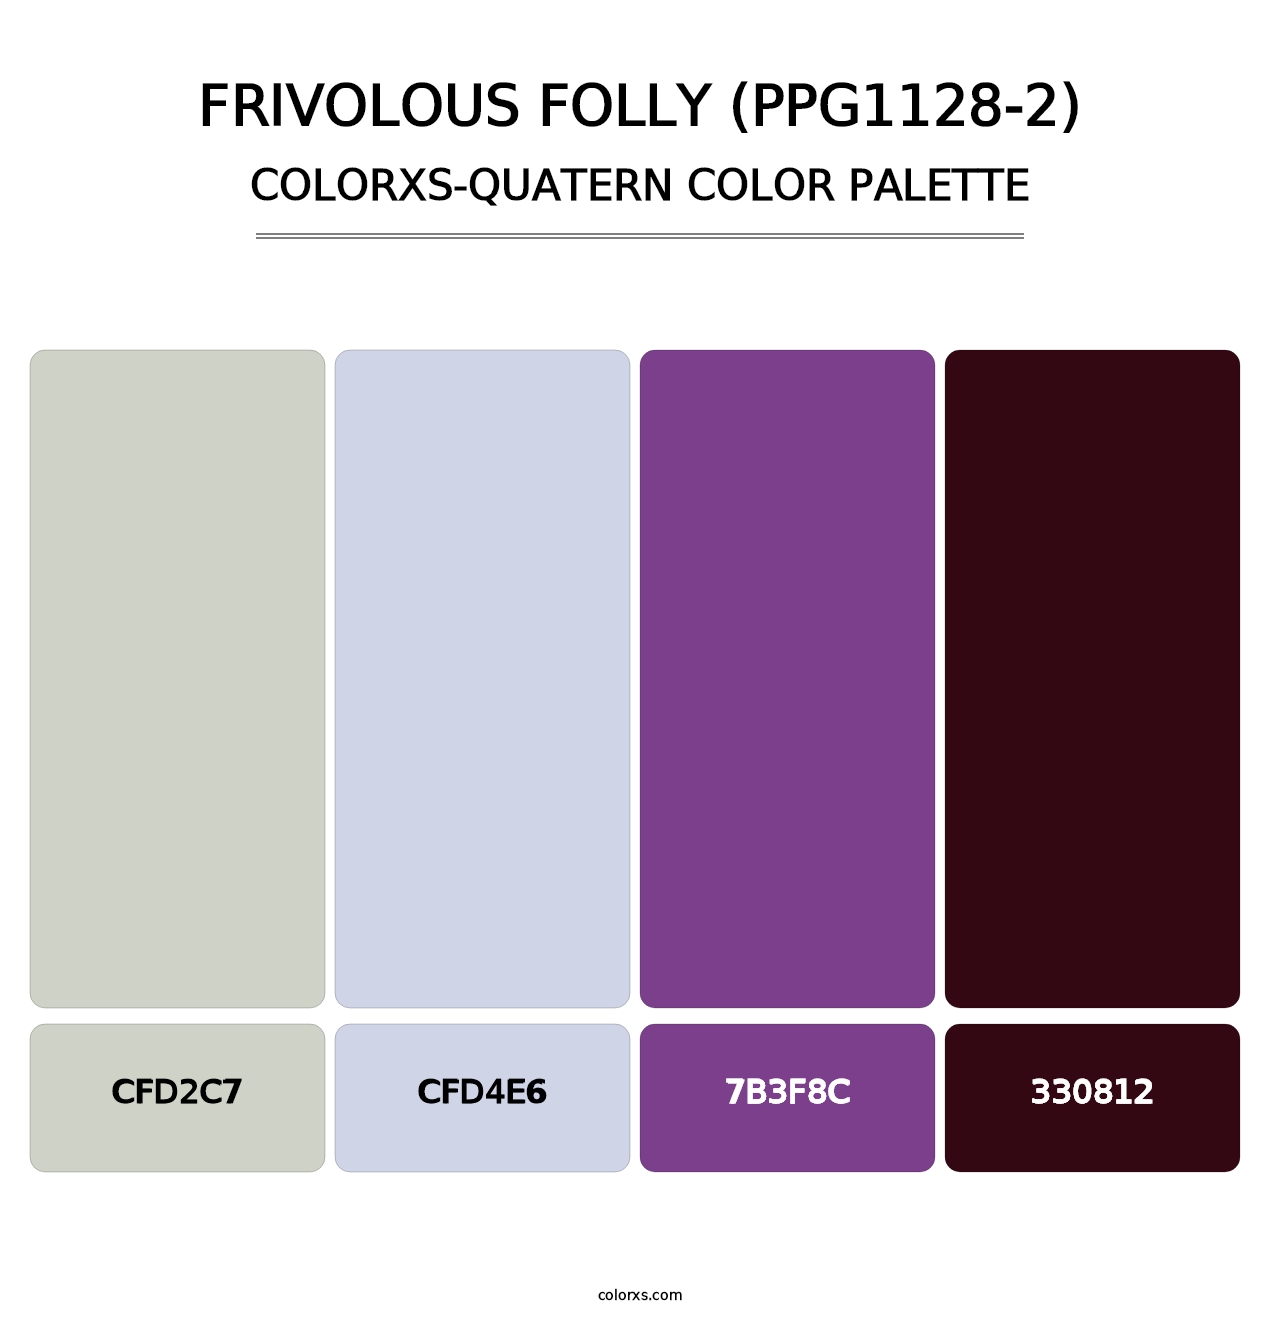 Frivolous Folly (PPG1128-2) - Colorxs Quatern Palette